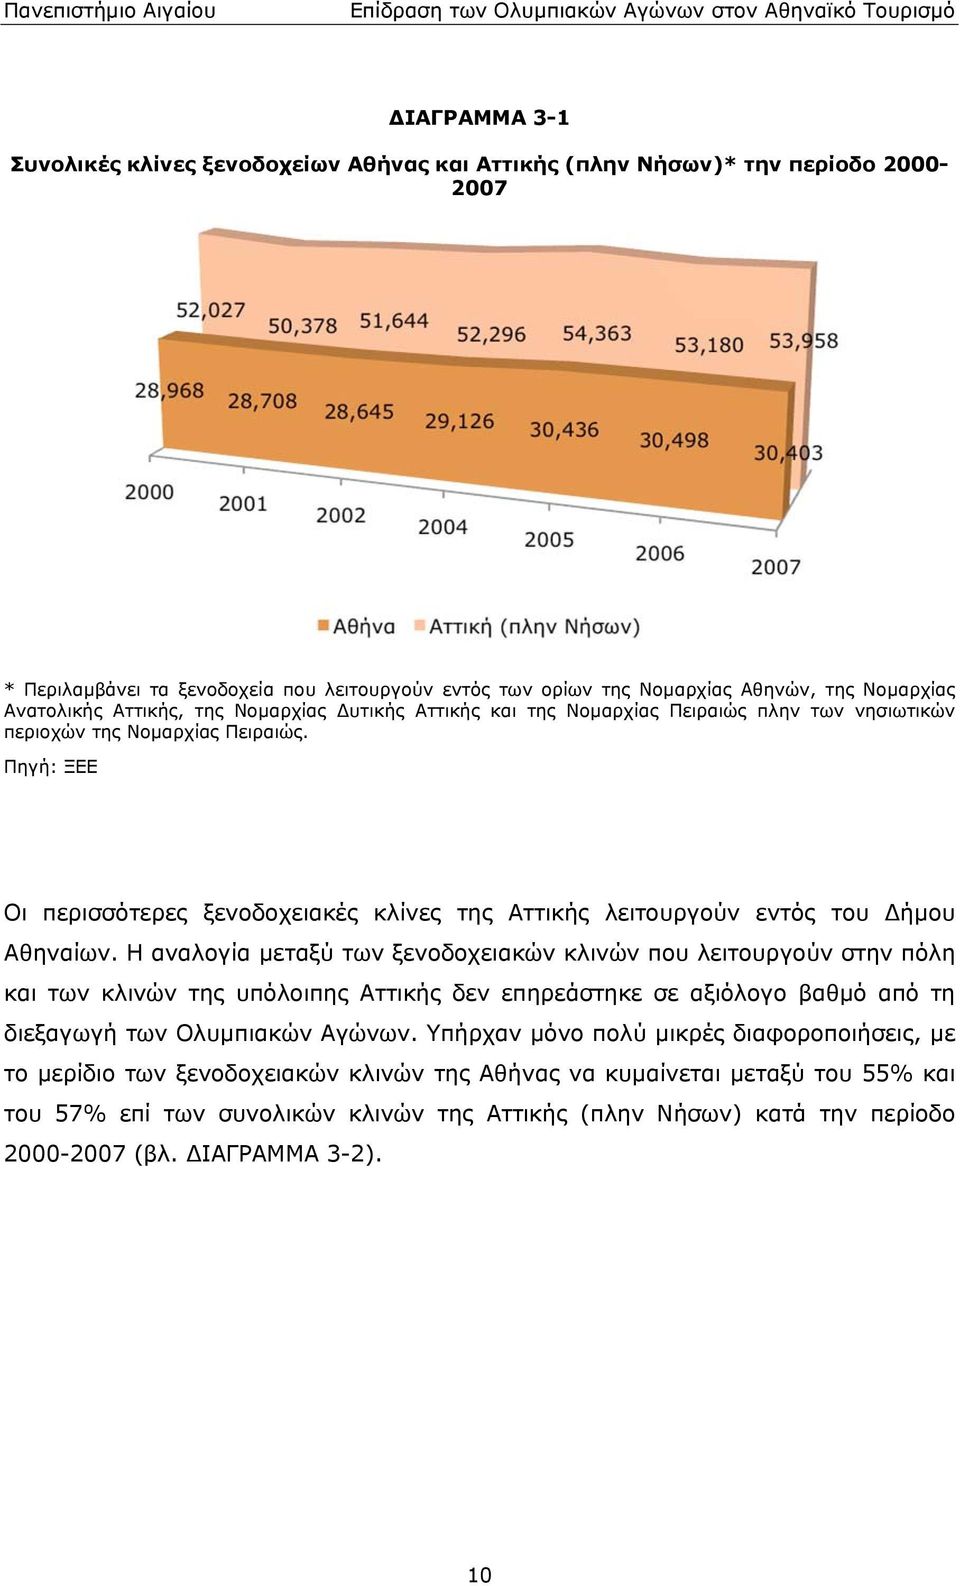 εντός του Δήμου Αθηναίων Η αναλογία μεταξύ των ξενοδοχειακών κλινών που λειτουργούν στην πόλη και των κλινών της υπόλοιπης Αττικής δεν επηρεάστηκε σε αξιόλογο βαθμό από τη διεξαγωγή των Ολυμπιακών